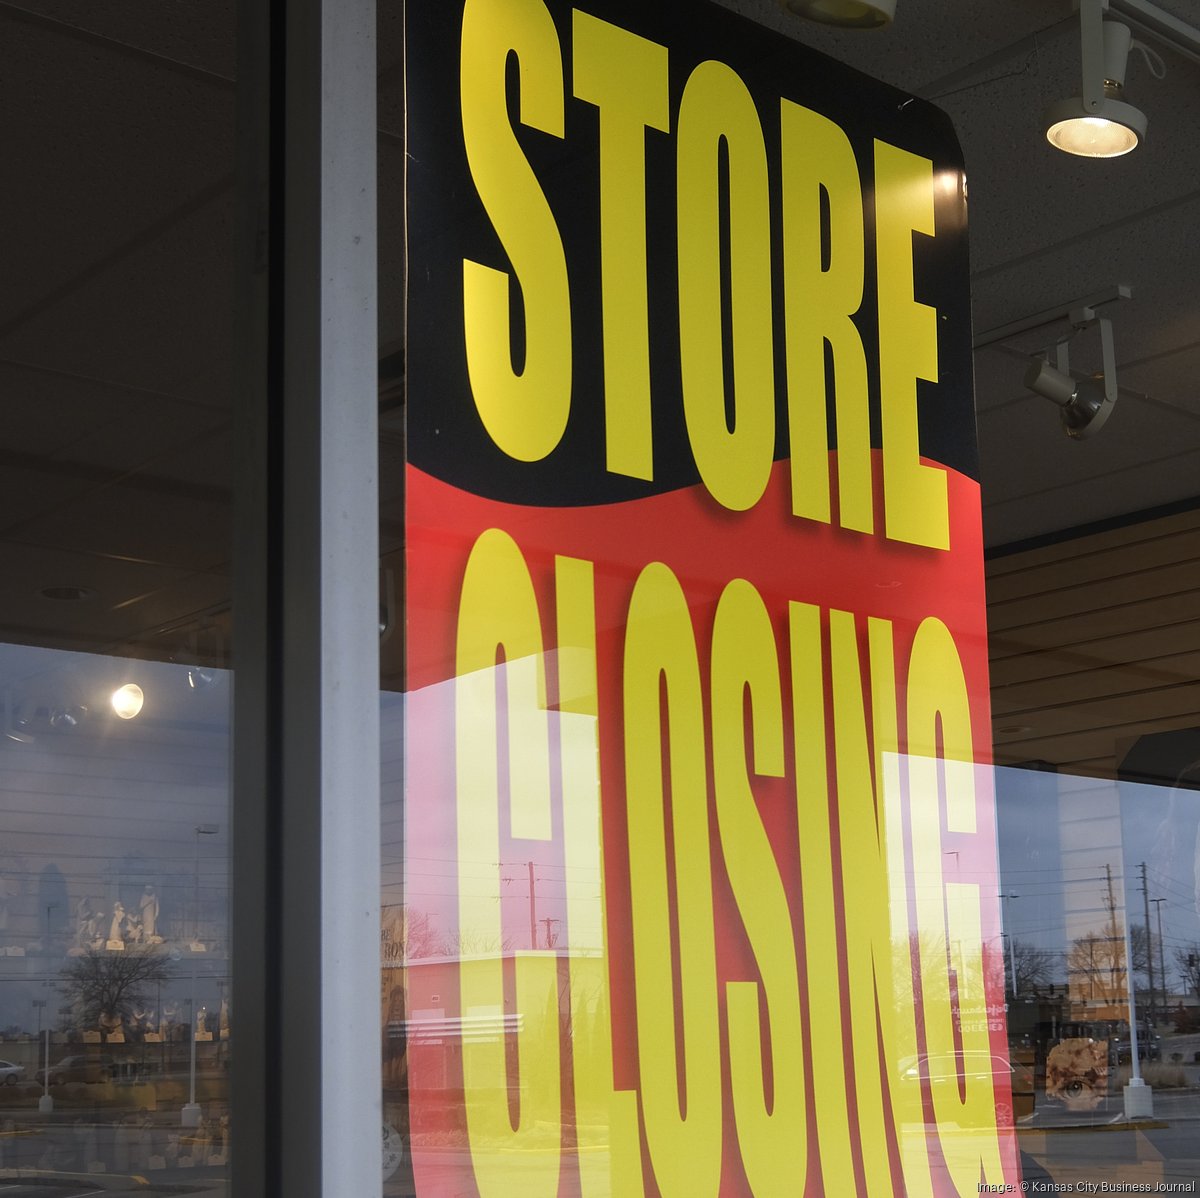 Stein Mart closing Citrus Heights store - Sacramento Business Journal